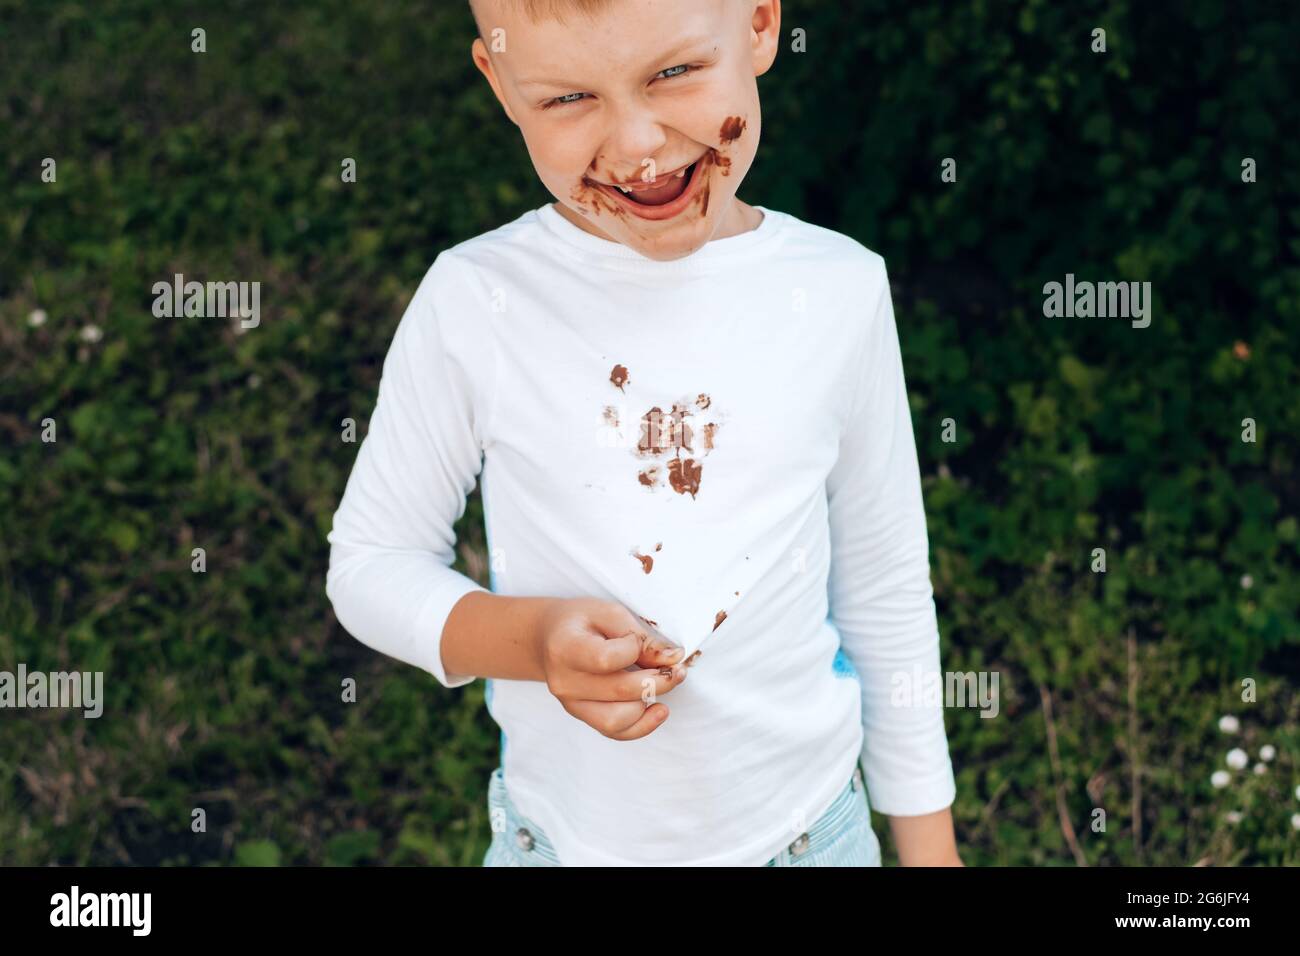 Federal Pensar Donación Niño mostrando manchas de chocolate en ropa blanca, suciedad en su cara.  Fotografías de alta calidad Fotografía de stock - Alamy